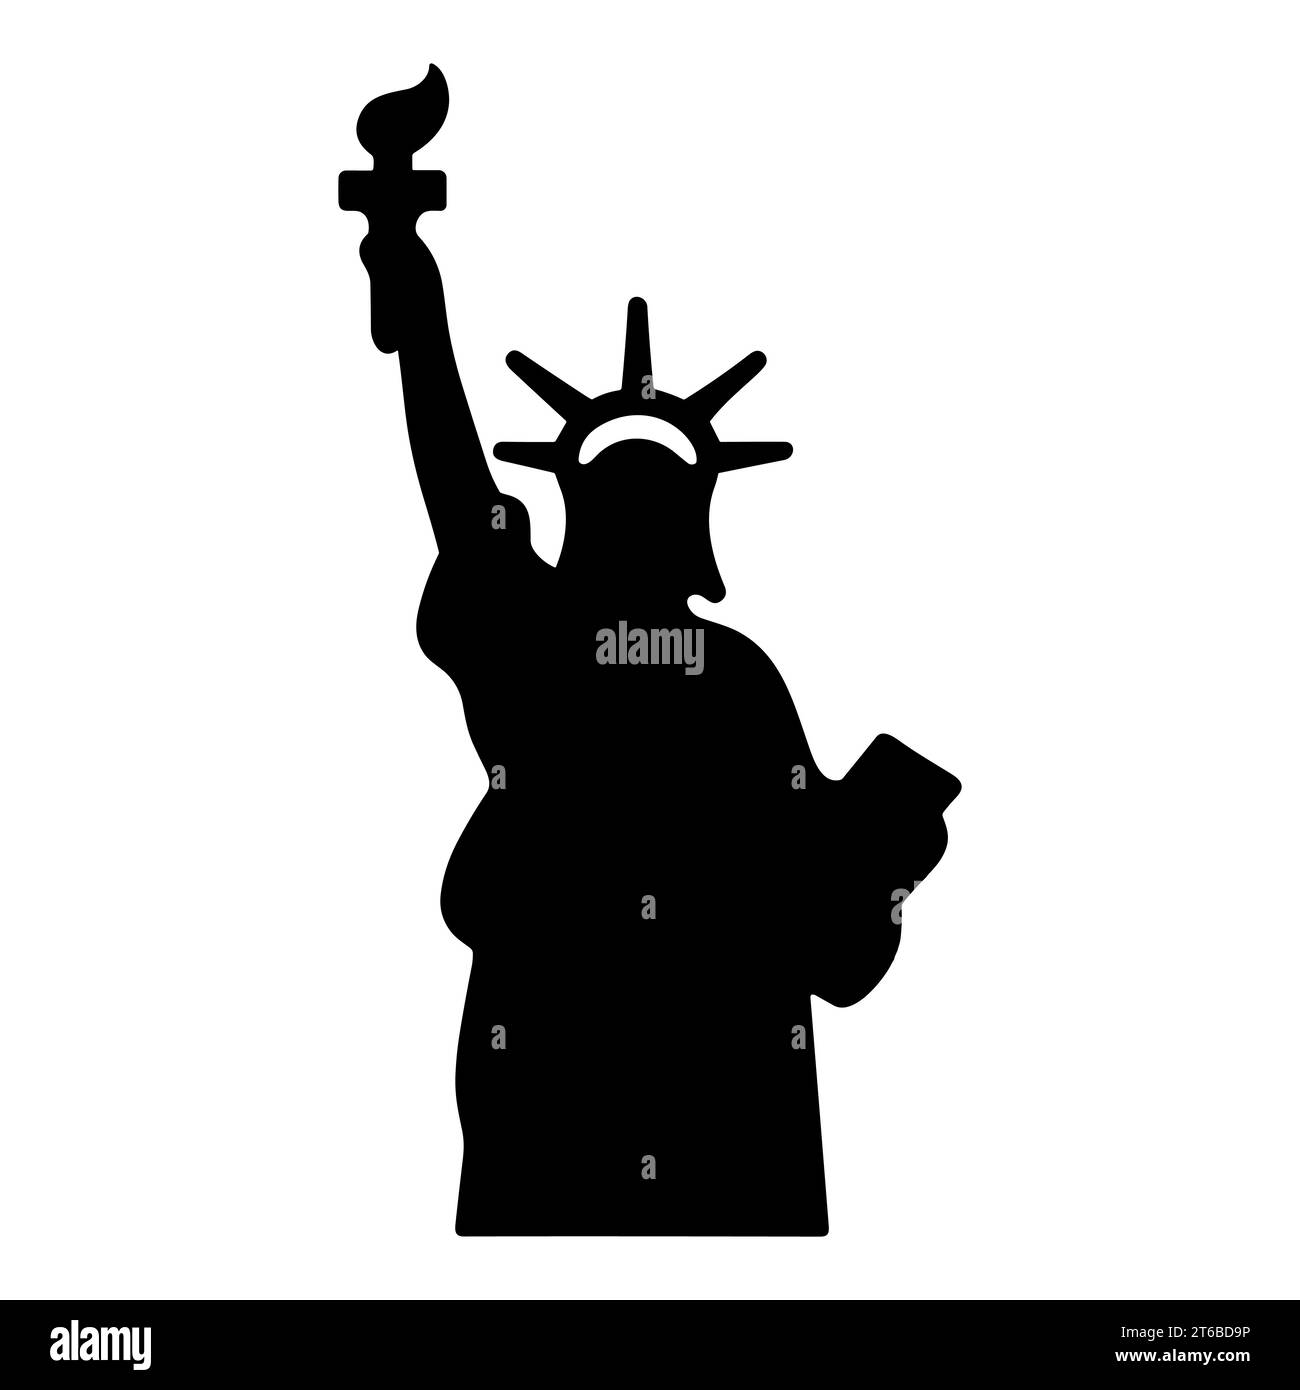 Icona della Statua della libertà. Silhouette nera della Statua della libertà con una torcia. Simbolo di libertà e democrazia. Illustrazione vettoriale Illustrazione Vettoriale